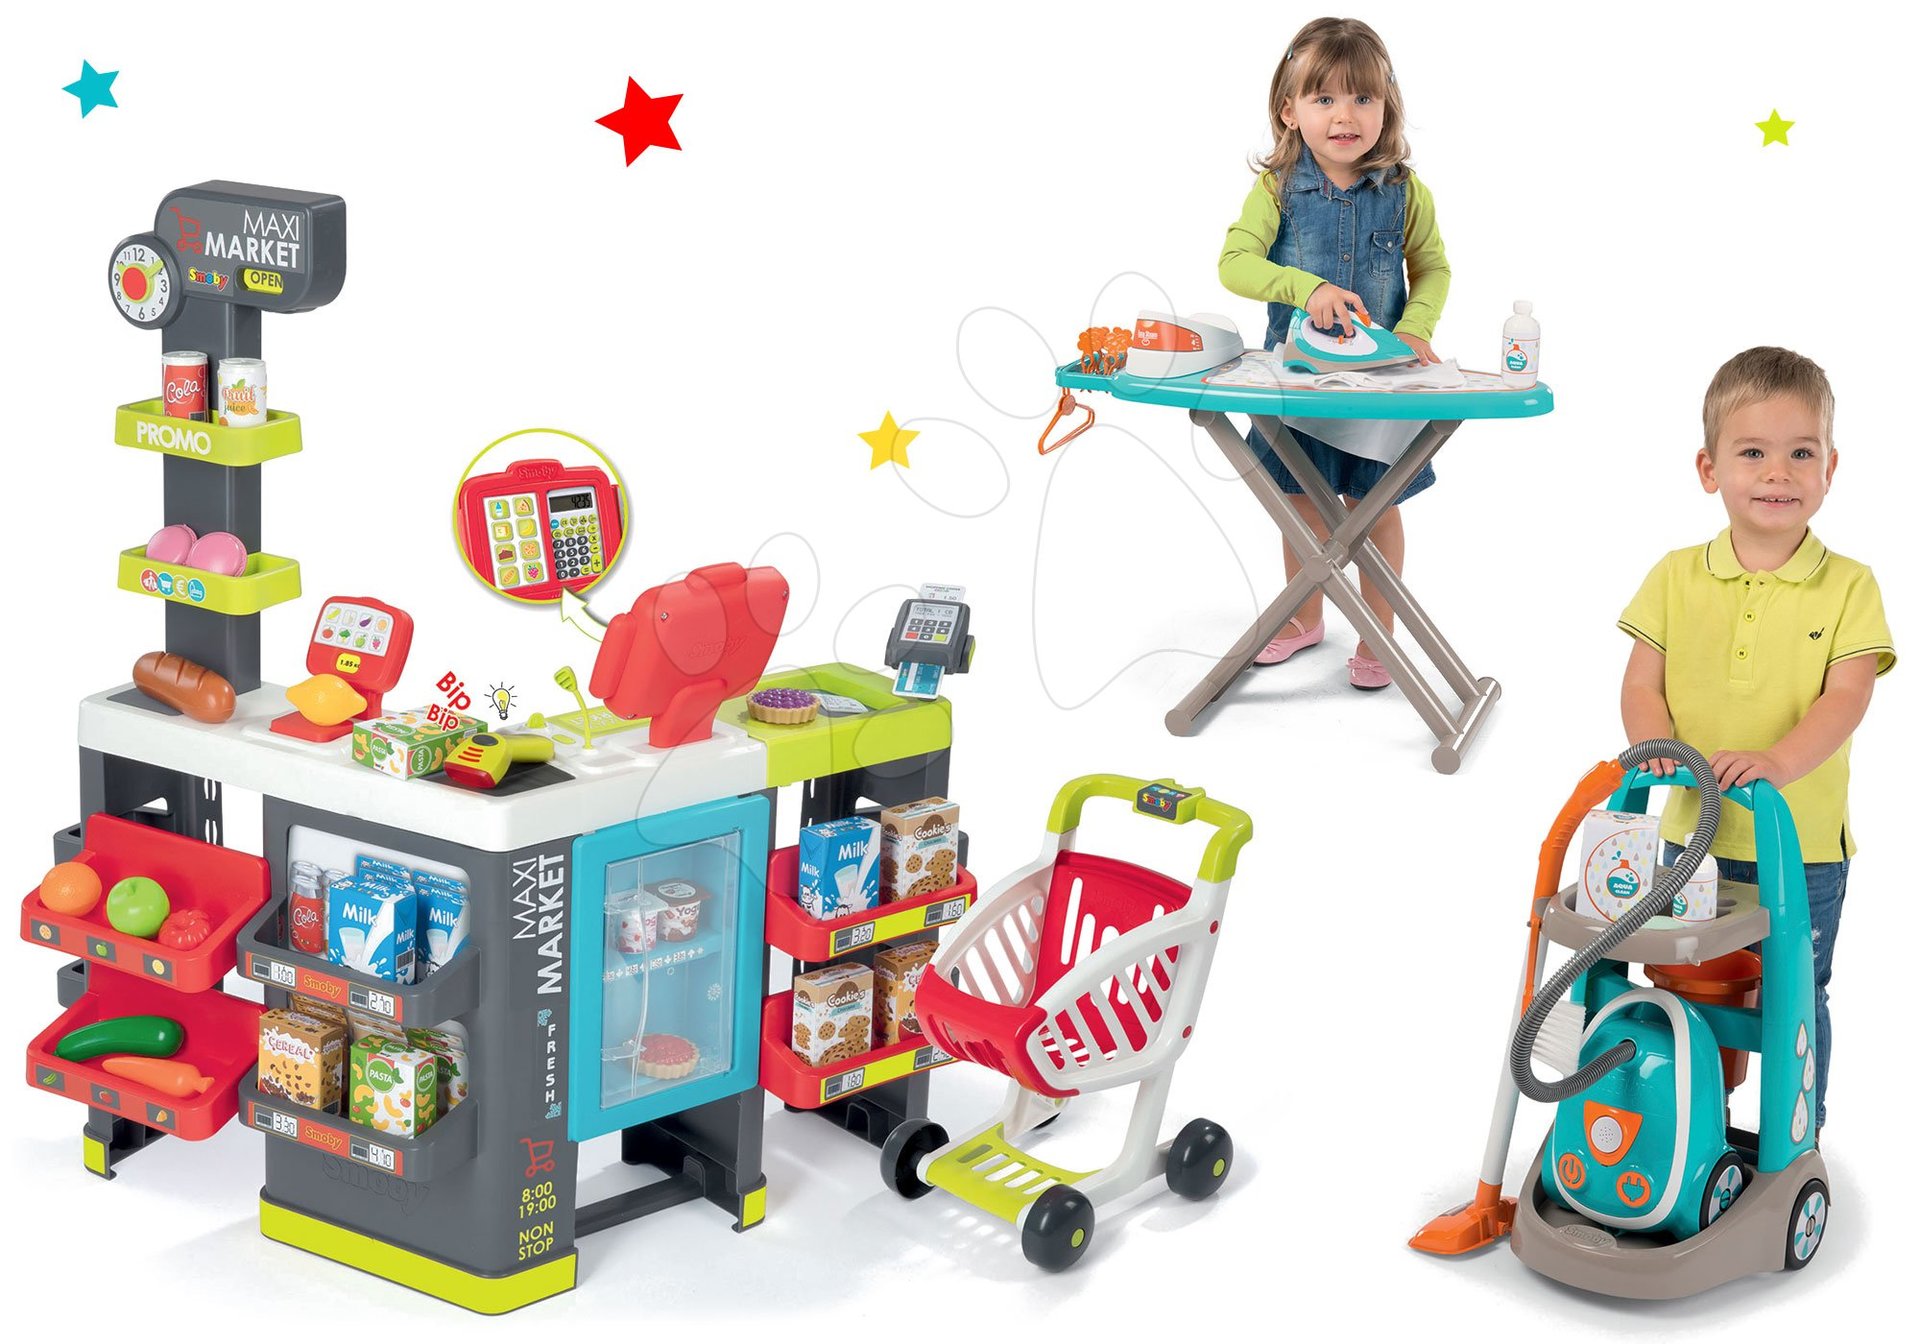 Obchody pre deti sety - Set obchod zmiešaný tovar Maximarket Smoby a upratovací vozík s elektronickým vysávačom a žehliacou doskou